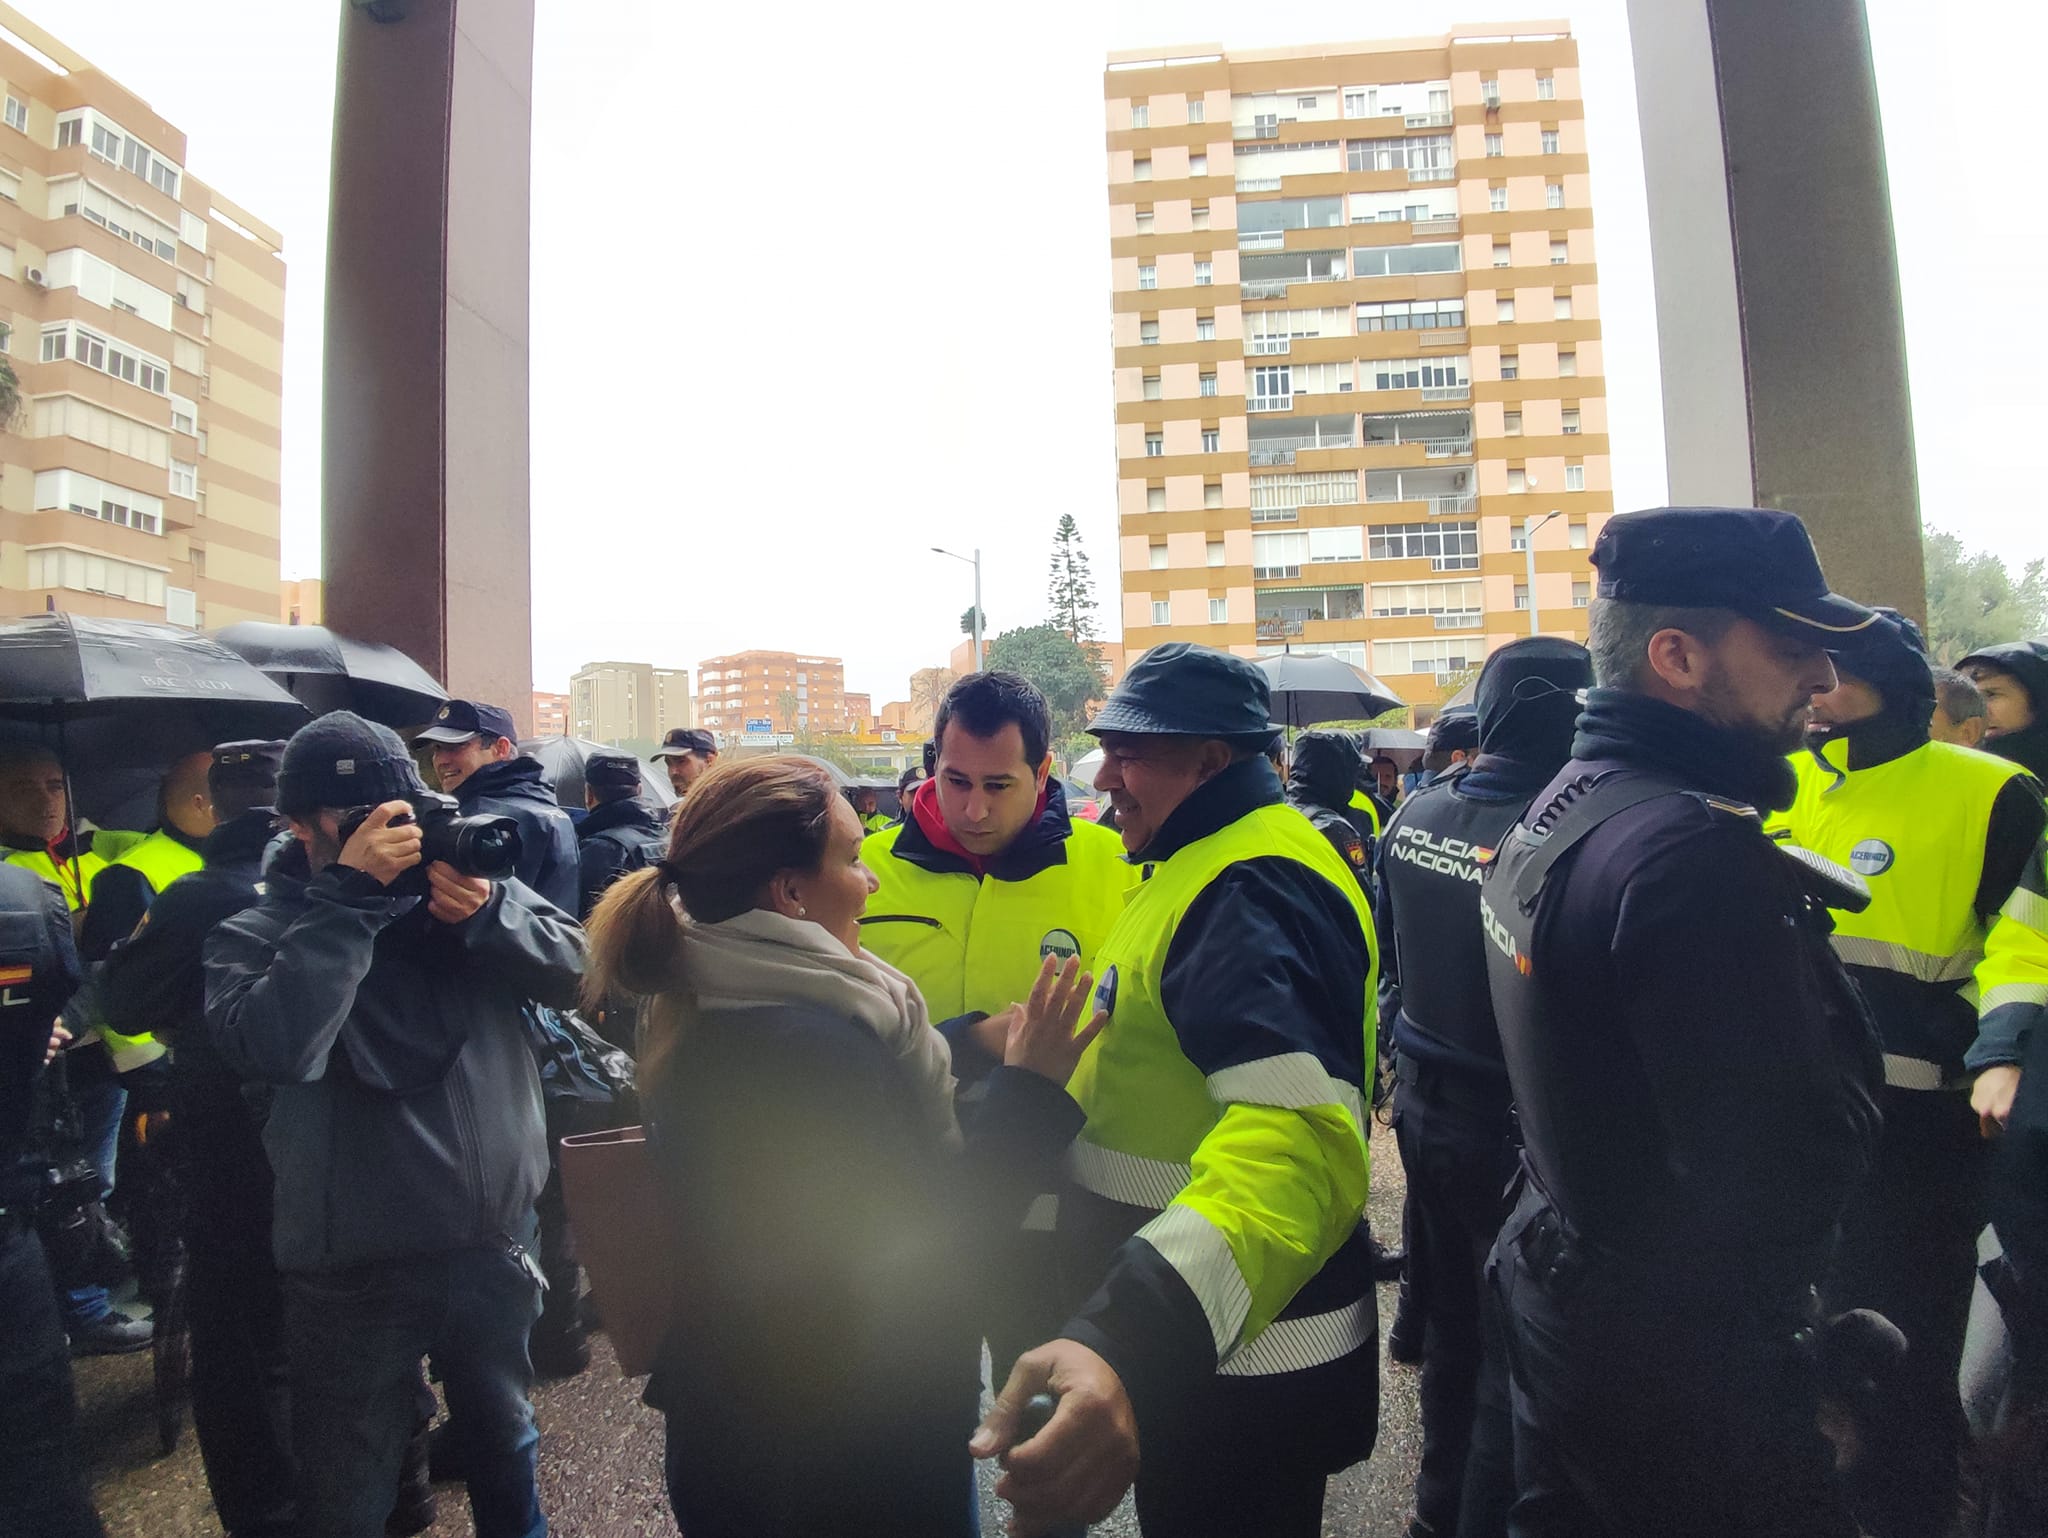 El comité de huelga de Acerinox considera "desproporcionada" la carga policial del pasado viernes. Hoy el detenido se enfrenta a un juicio rápido 